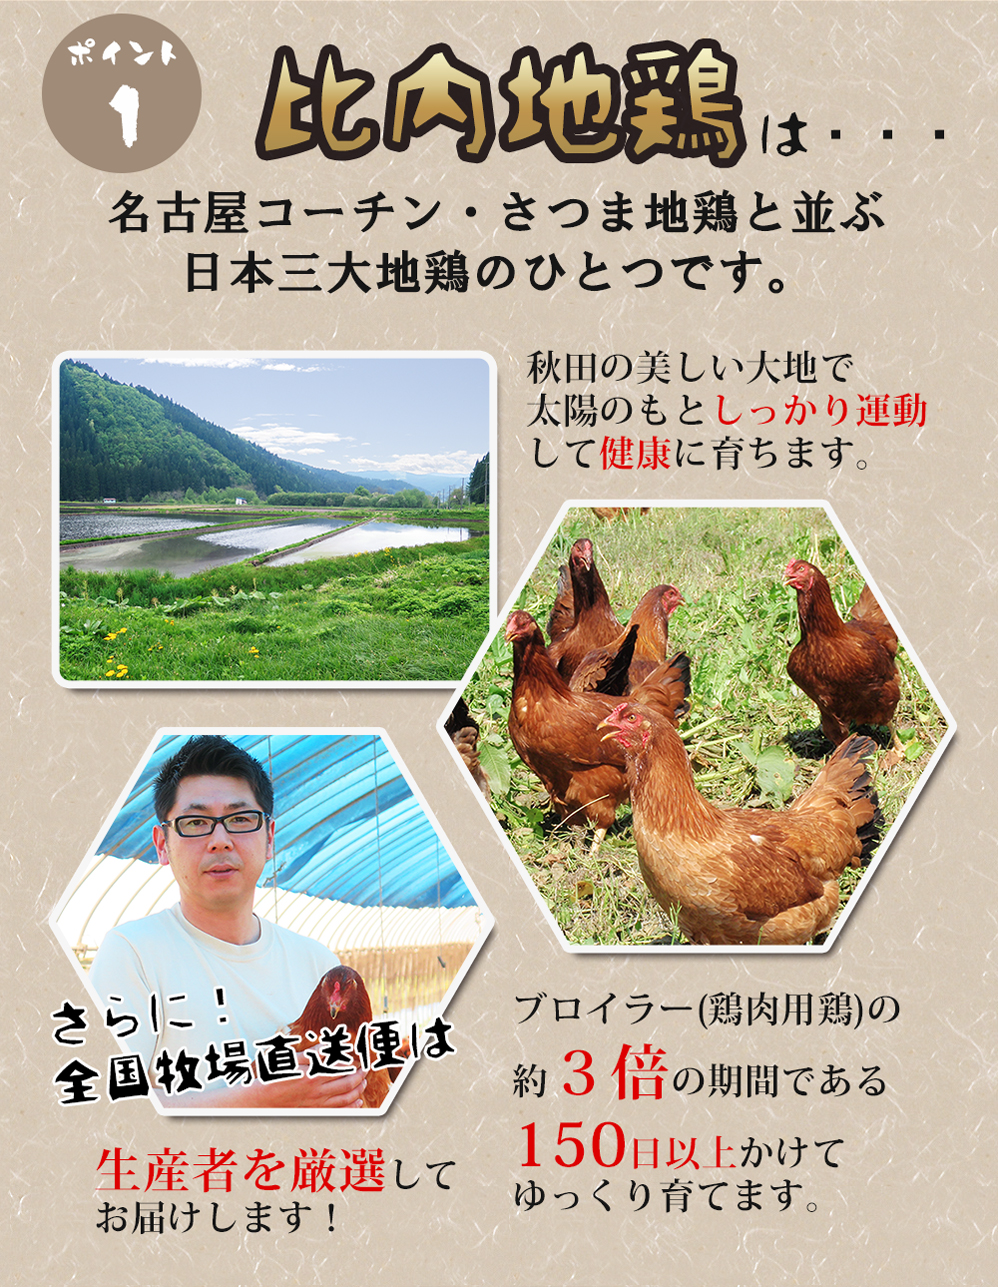 比内地鶏は名古屋コーチン、さつま地鶏と並ぶ日本三大地鶏の一つです。